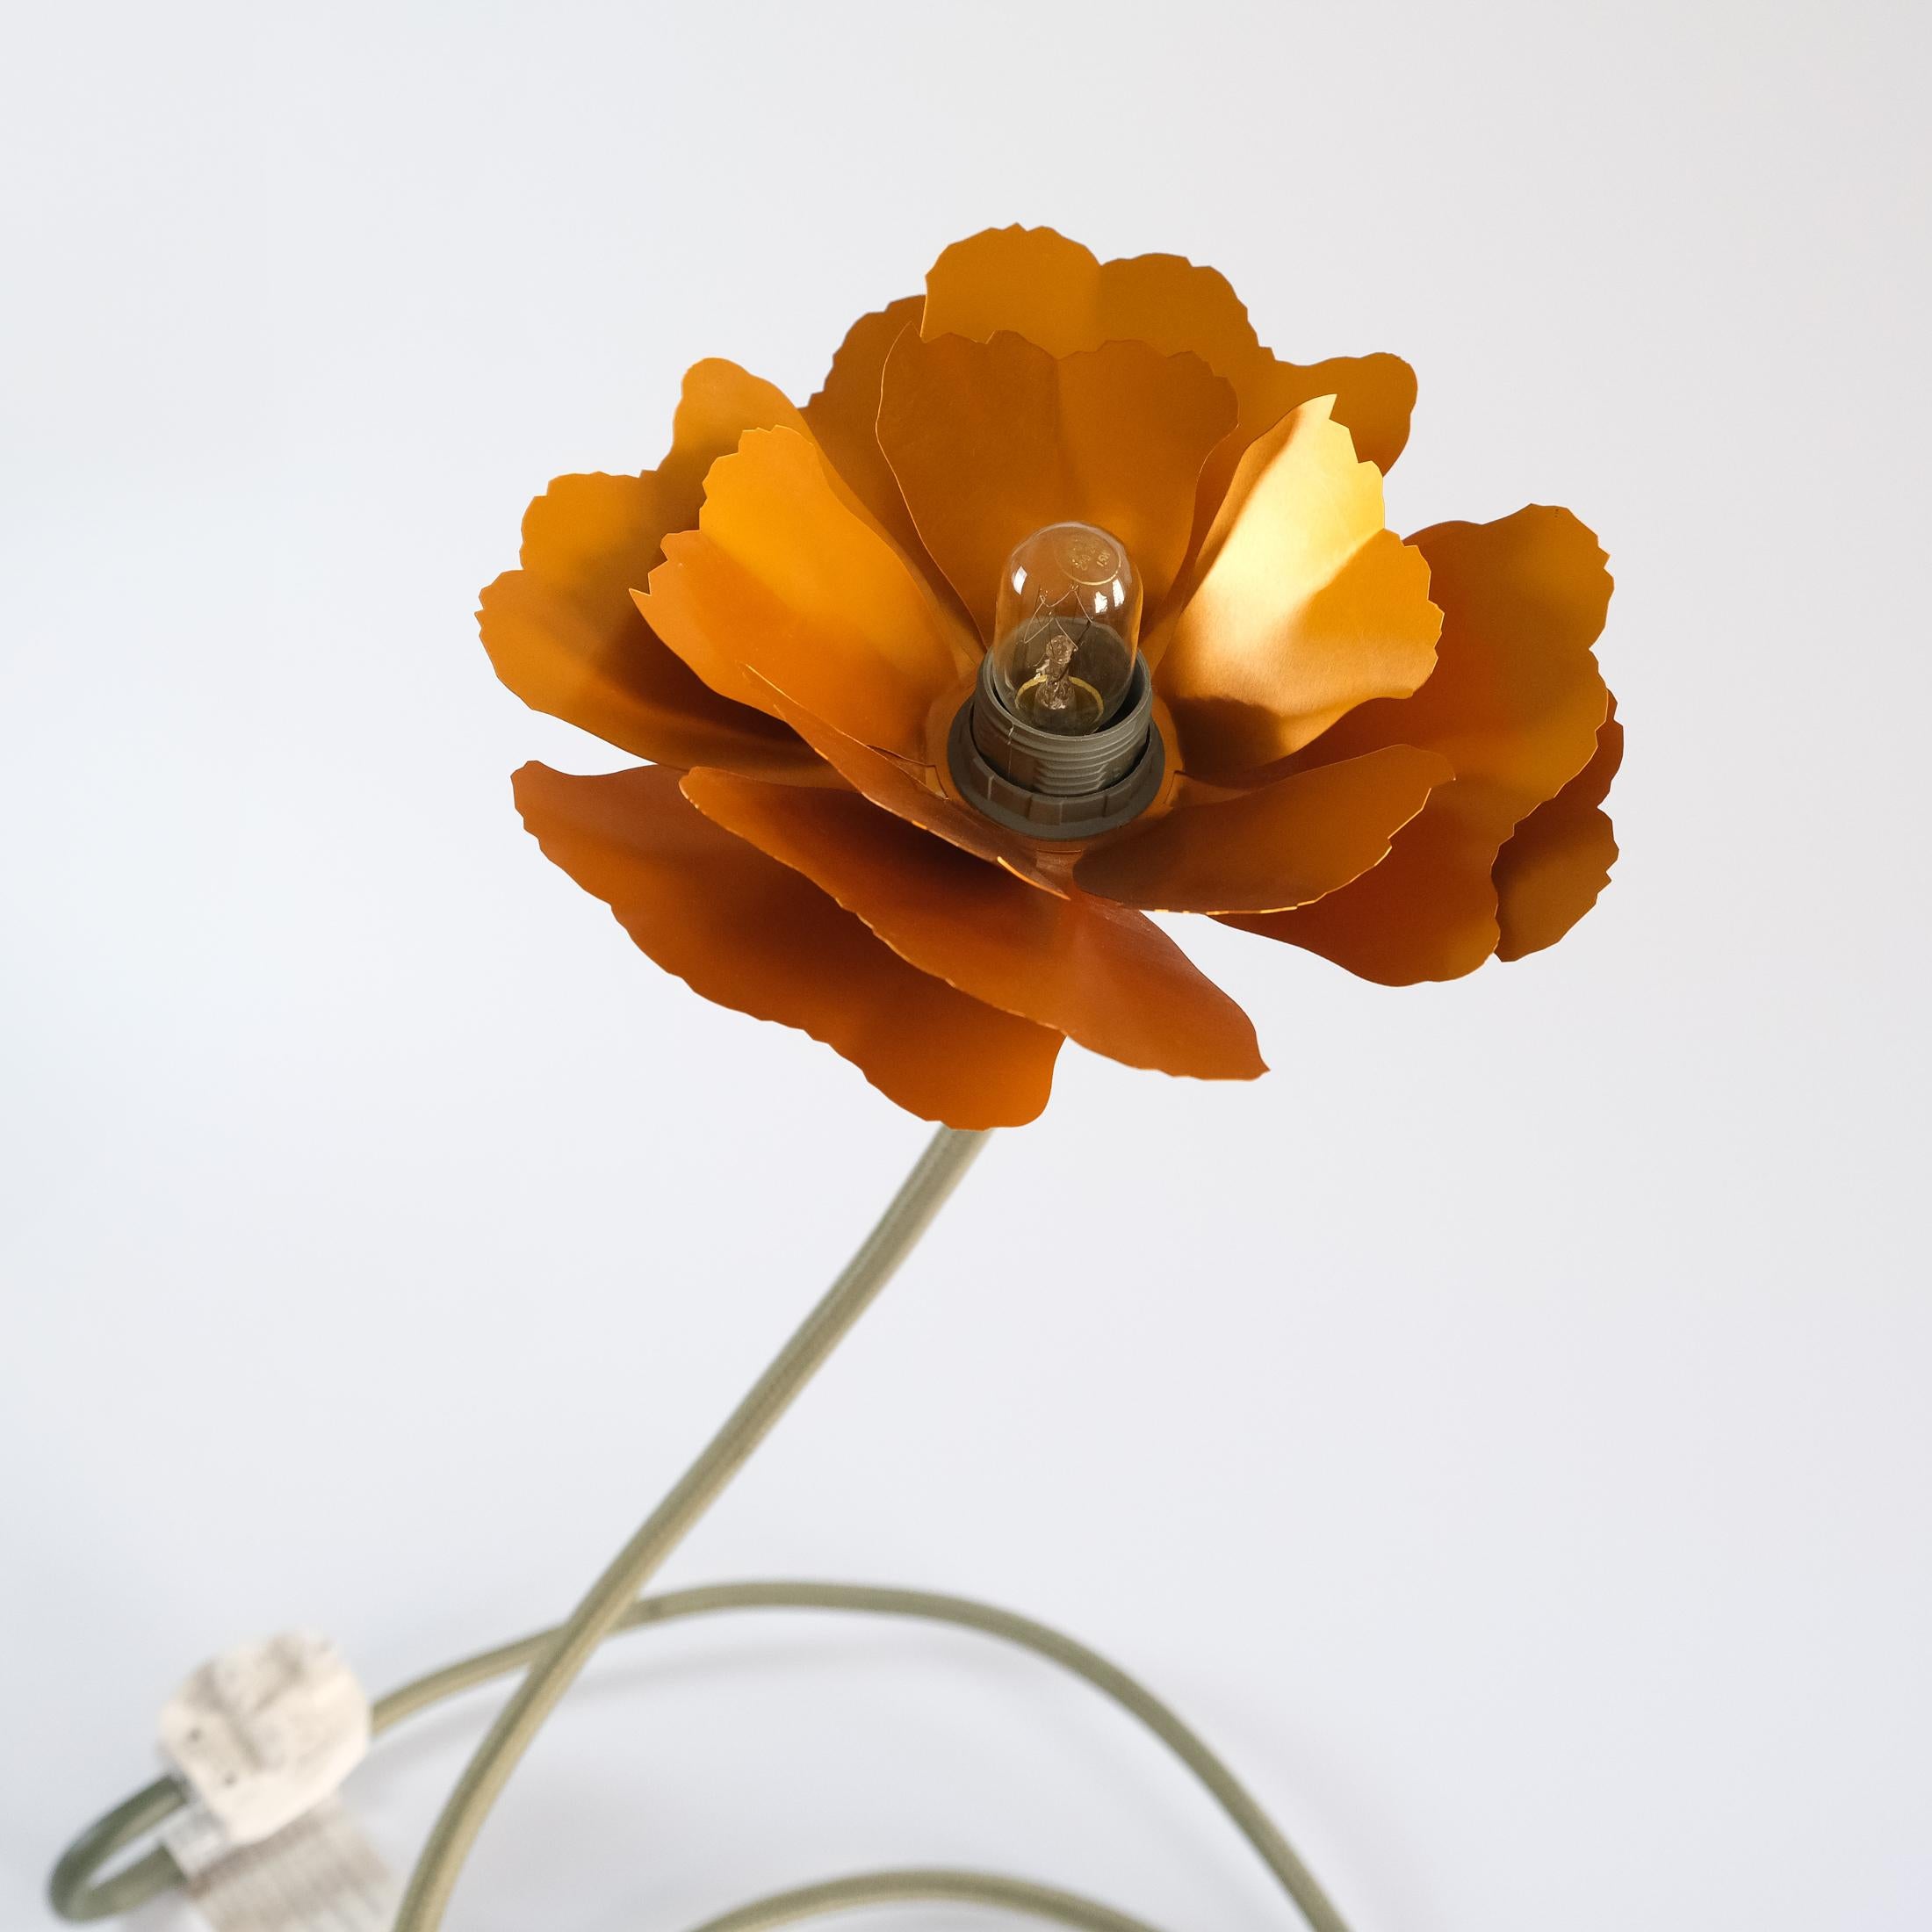 Helena Christensen's Flexible Flower Lamp for Habitat “V.I.P” Collection, 2004 For Sale 6